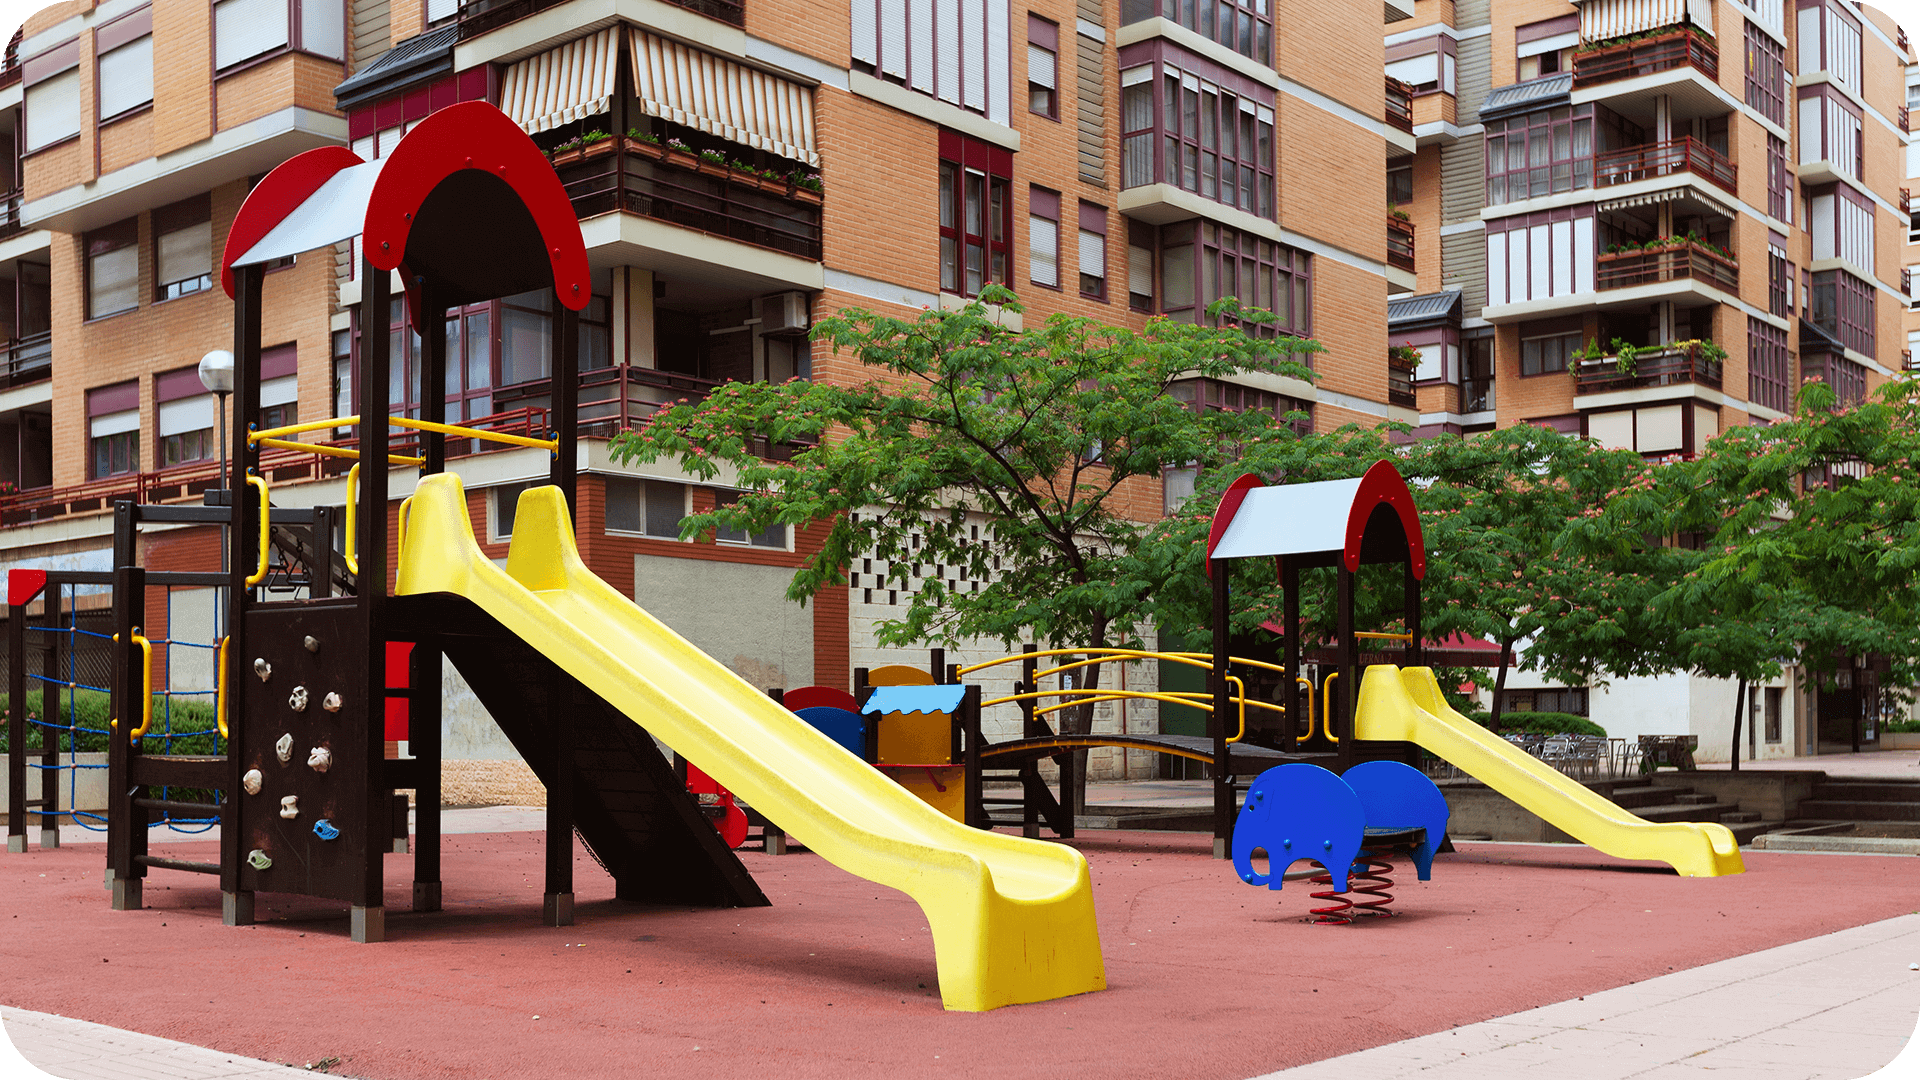 Society Park for children